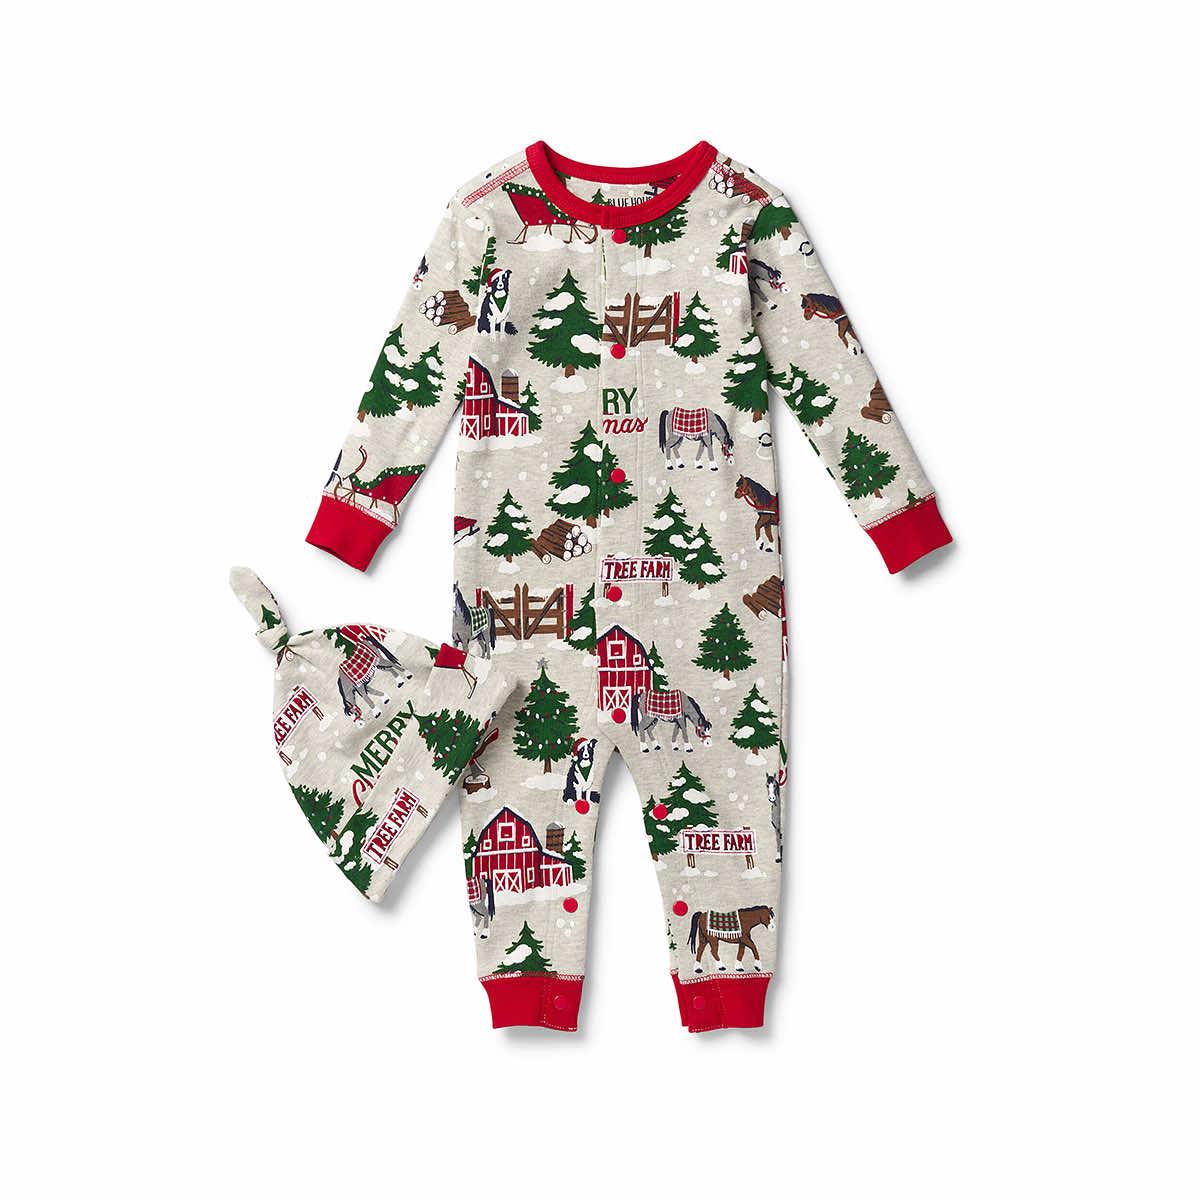 Baby's Christmas Tree Farm Bodysuit Pajamas With Hat